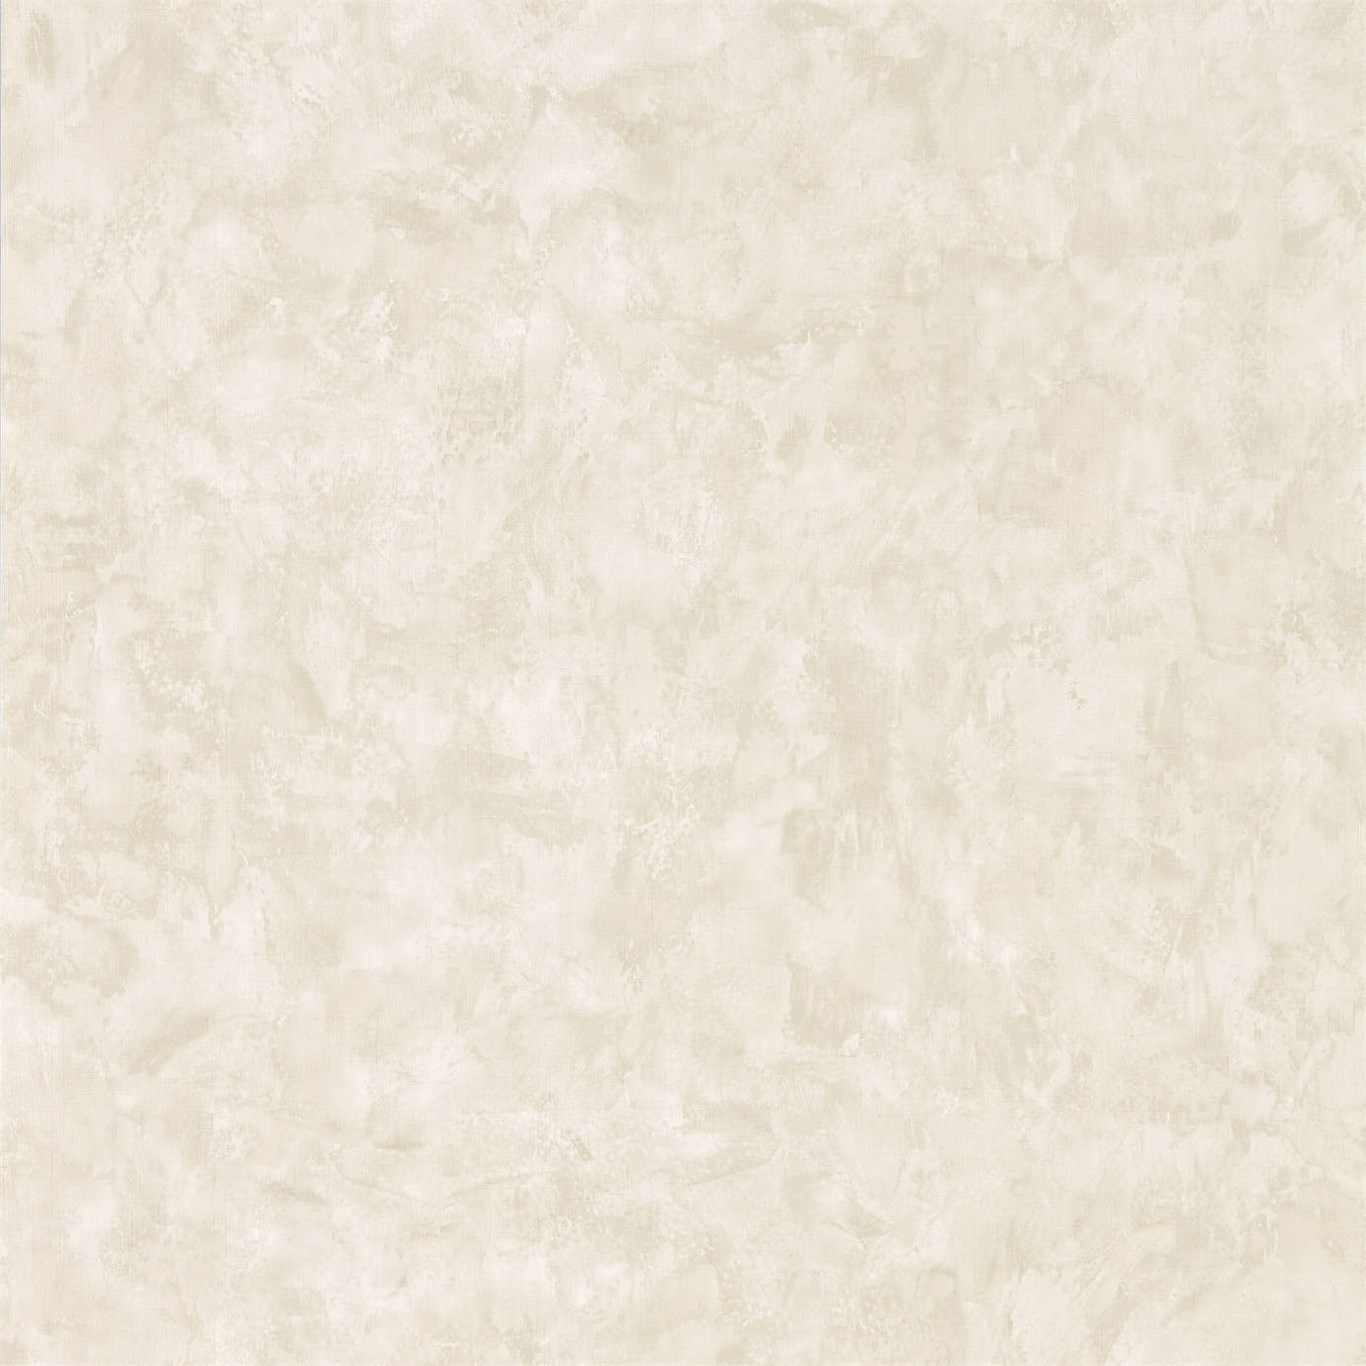 Yeso Limestone Wallpaper by HAR